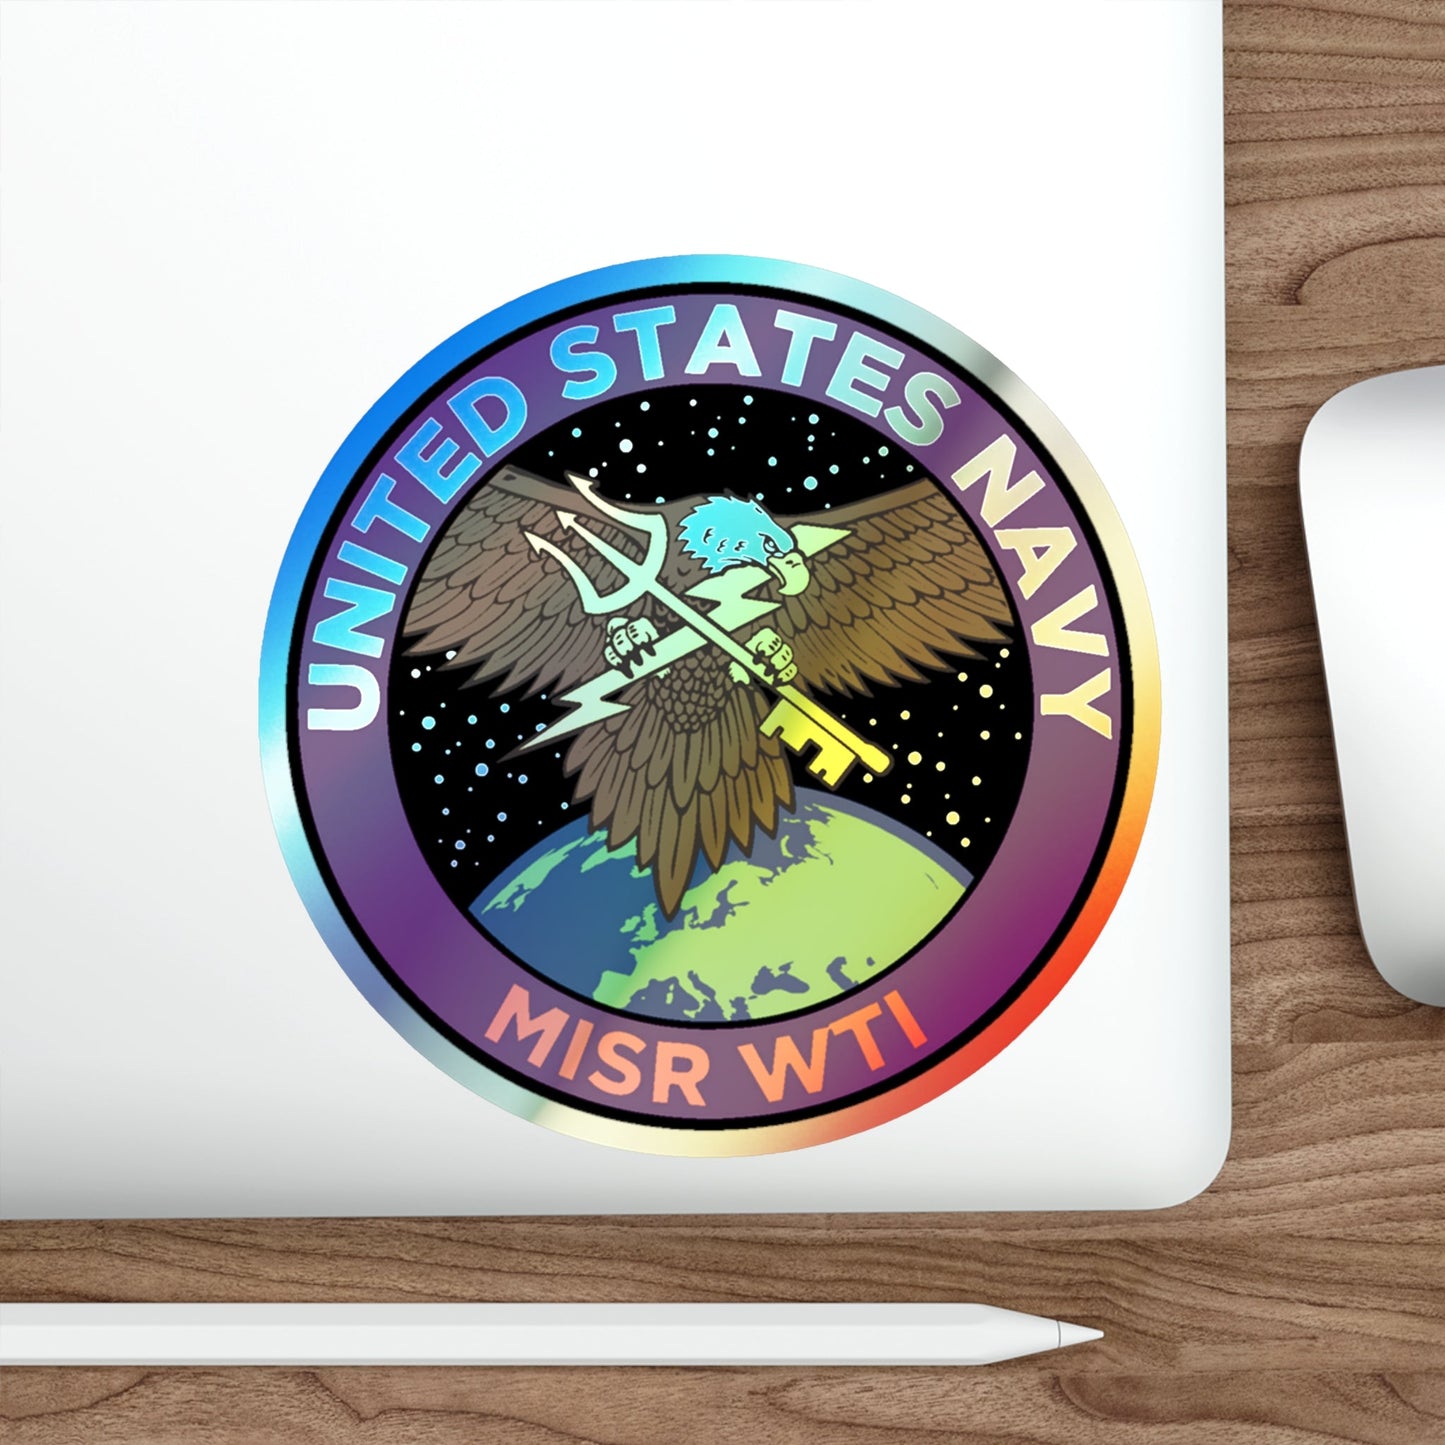 USN MISR WTI (U.S. Navy) Holographic STICKER Die-Cut Vinyl Decal-The Sticker Space